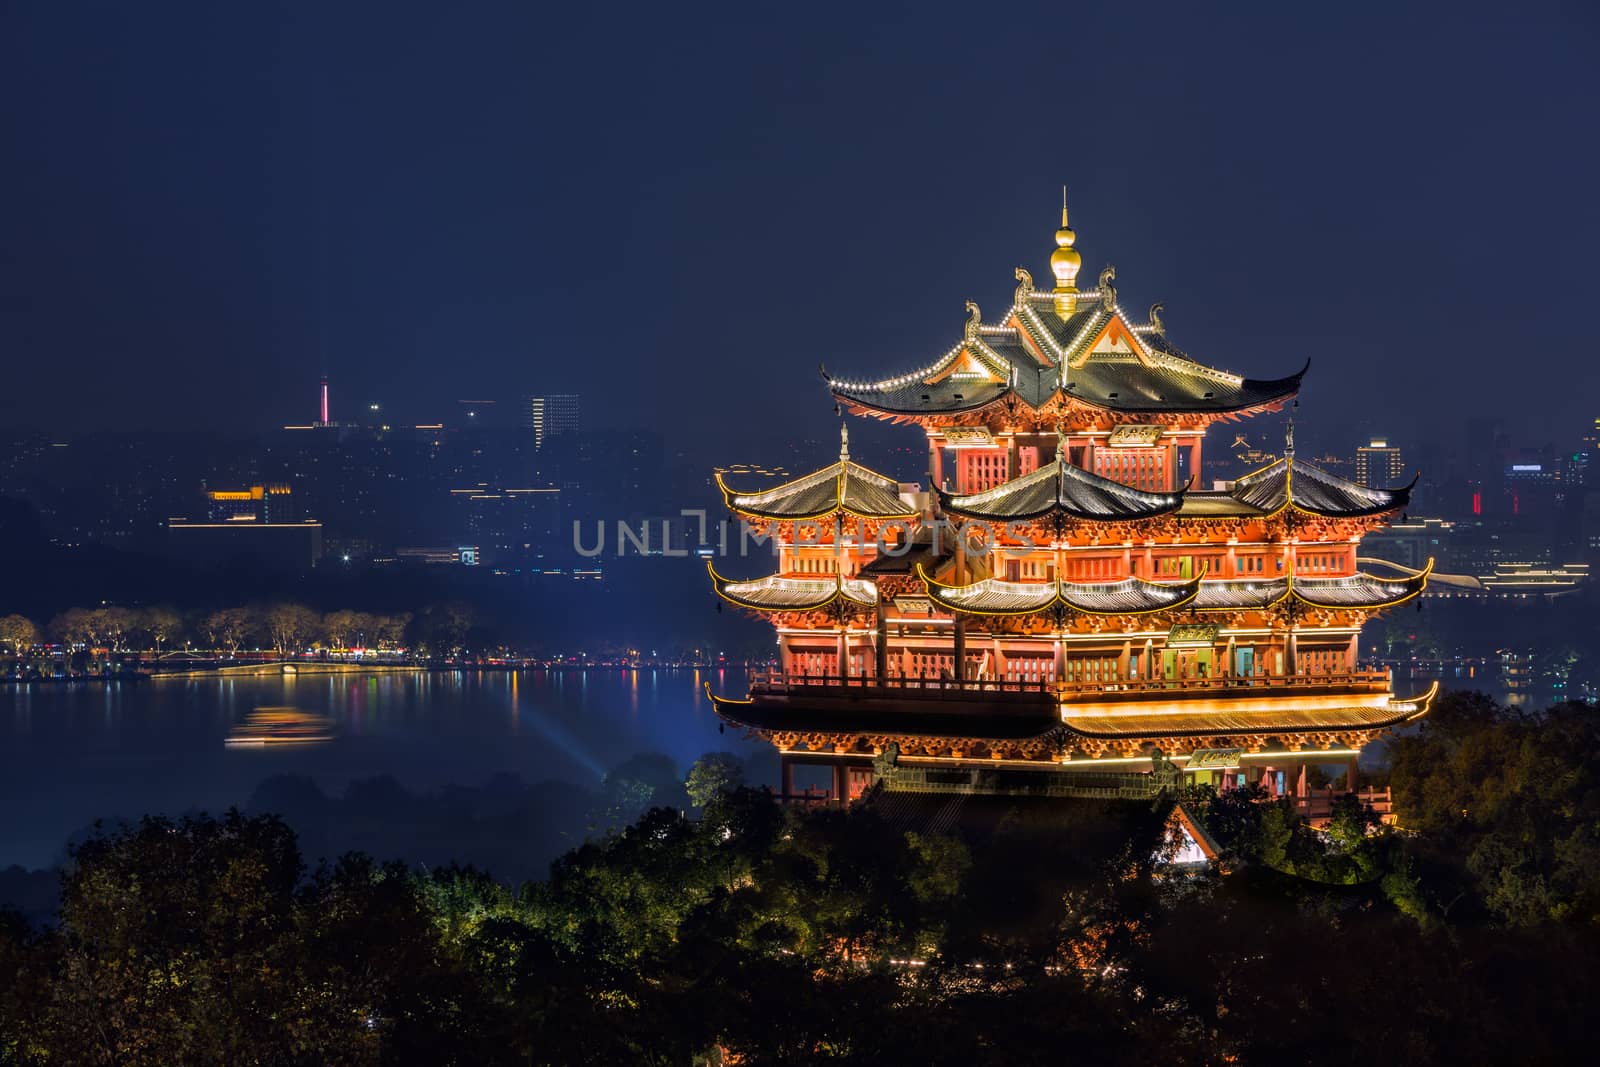 Night view of illuminated Cheng Huang Ge, also known as City God Pavillion, Hangzhou, China by zhu_zhu